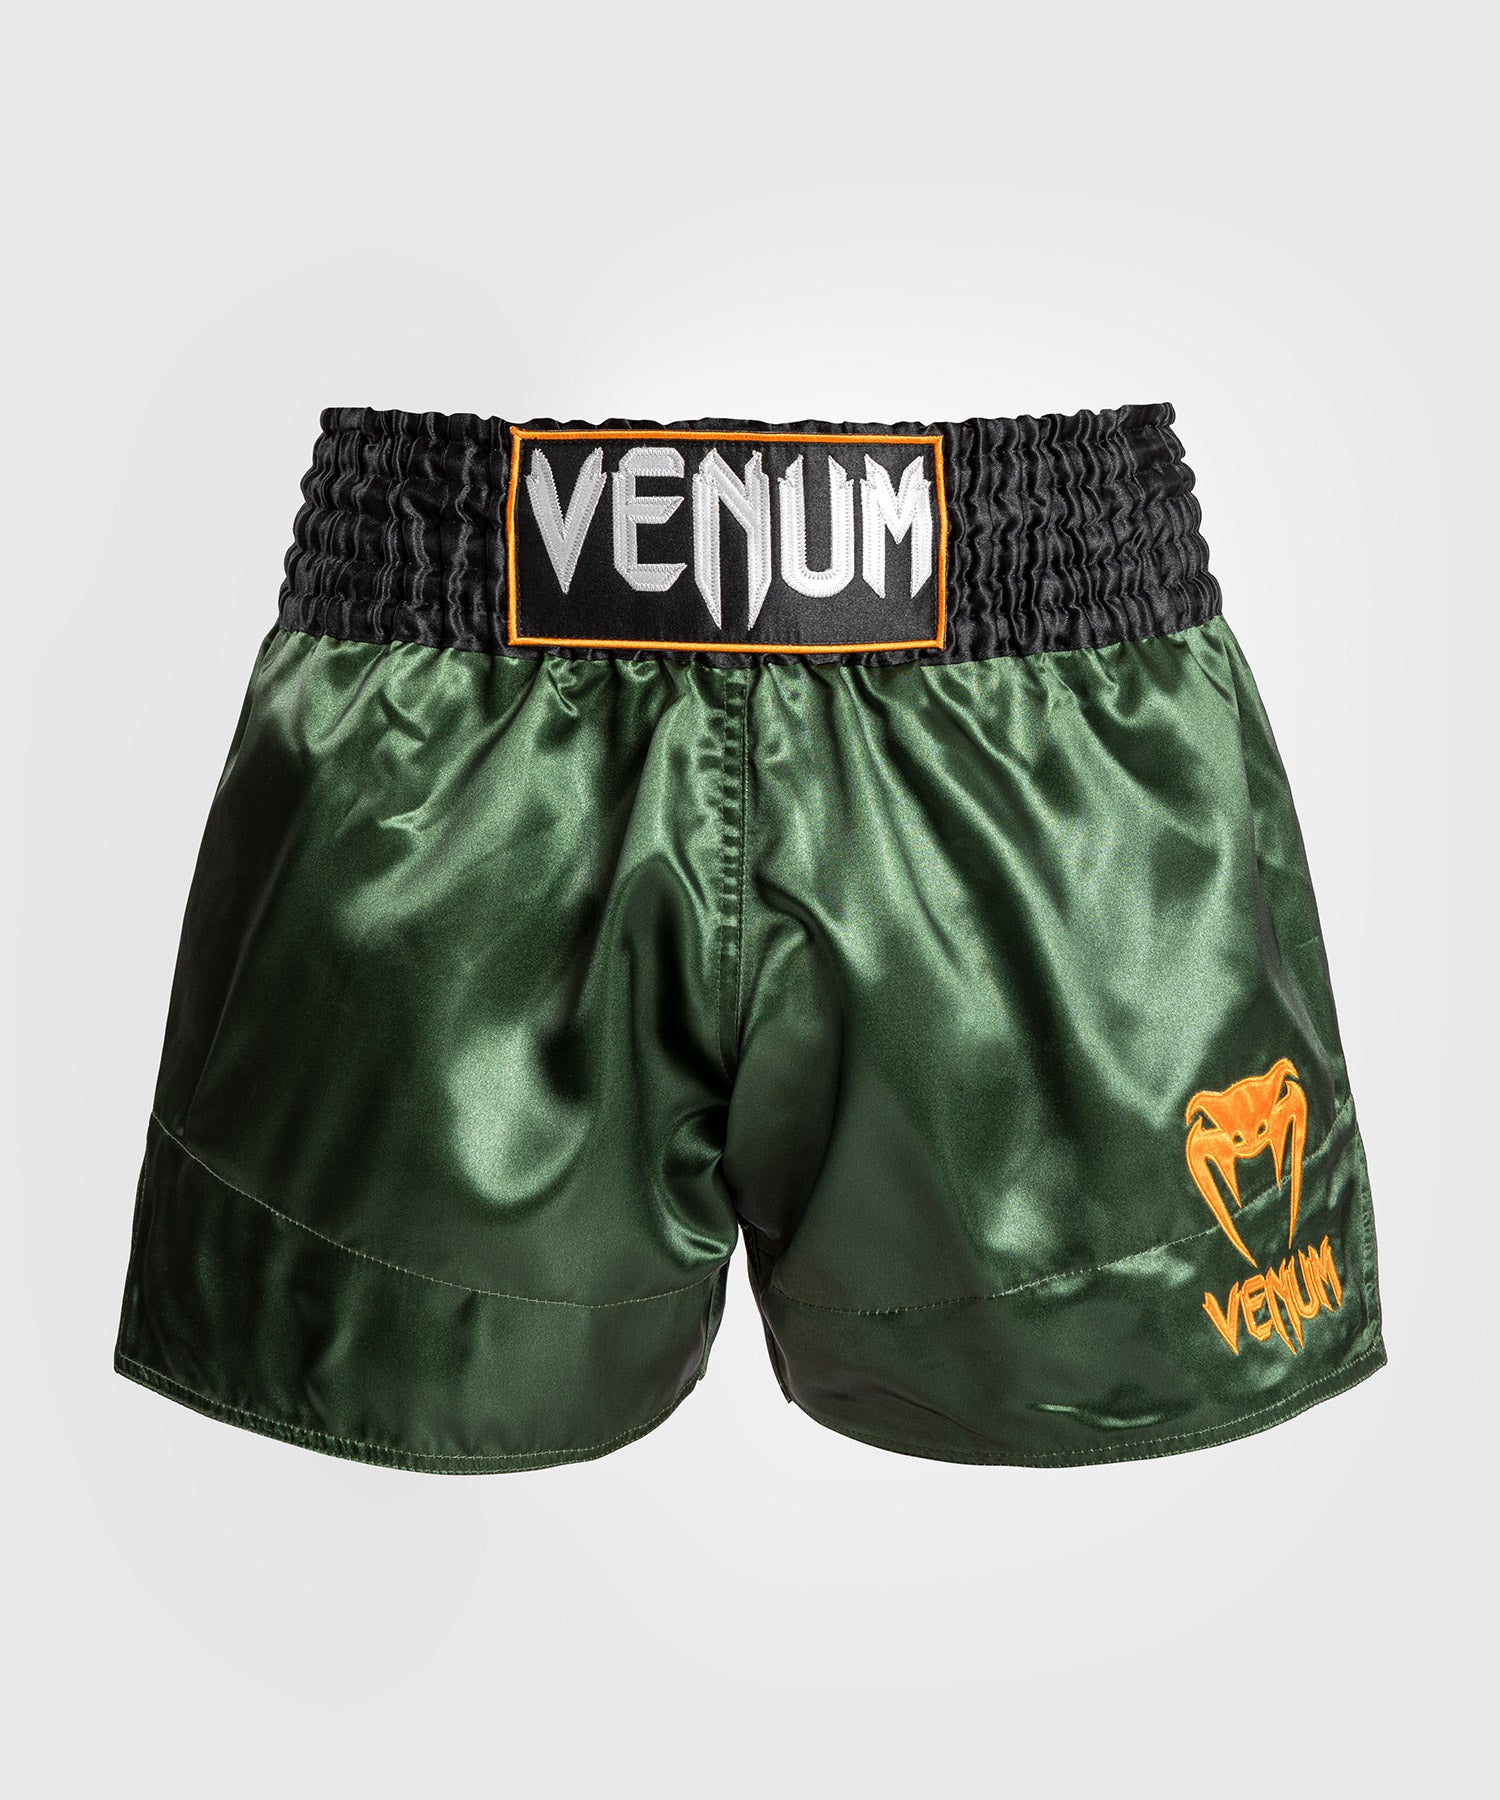 Venum Classic Muay Thaï Short - Green/Black/Gold - Venum